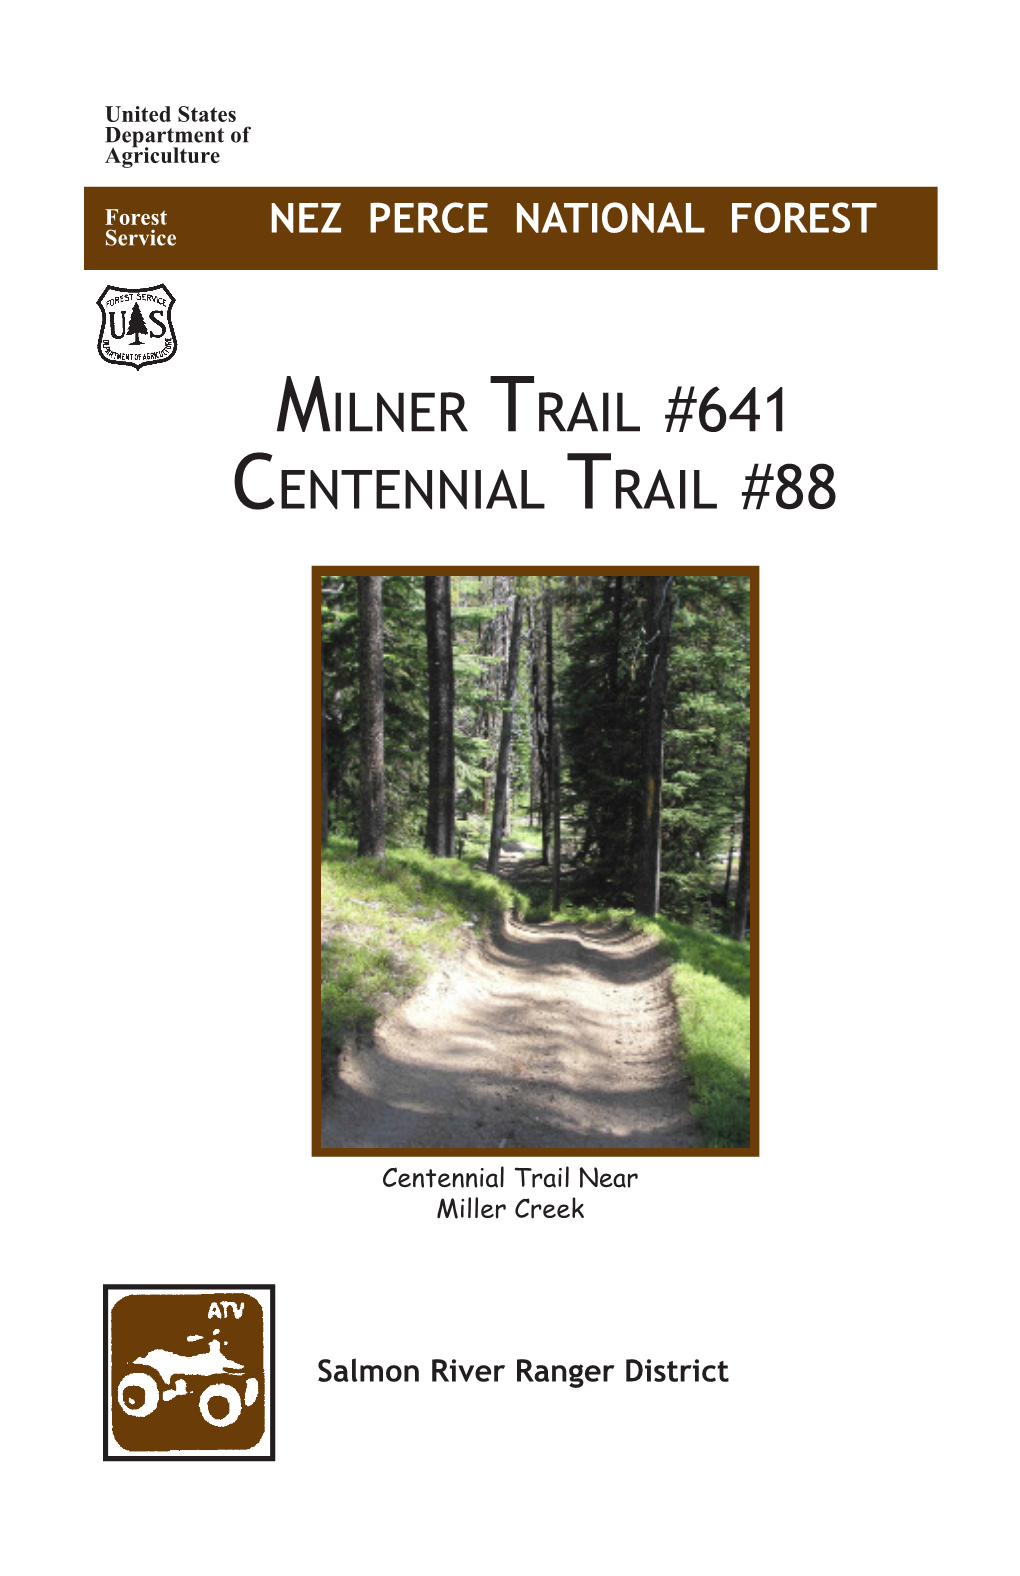 Milner Trail #641 Centennial Trail #88